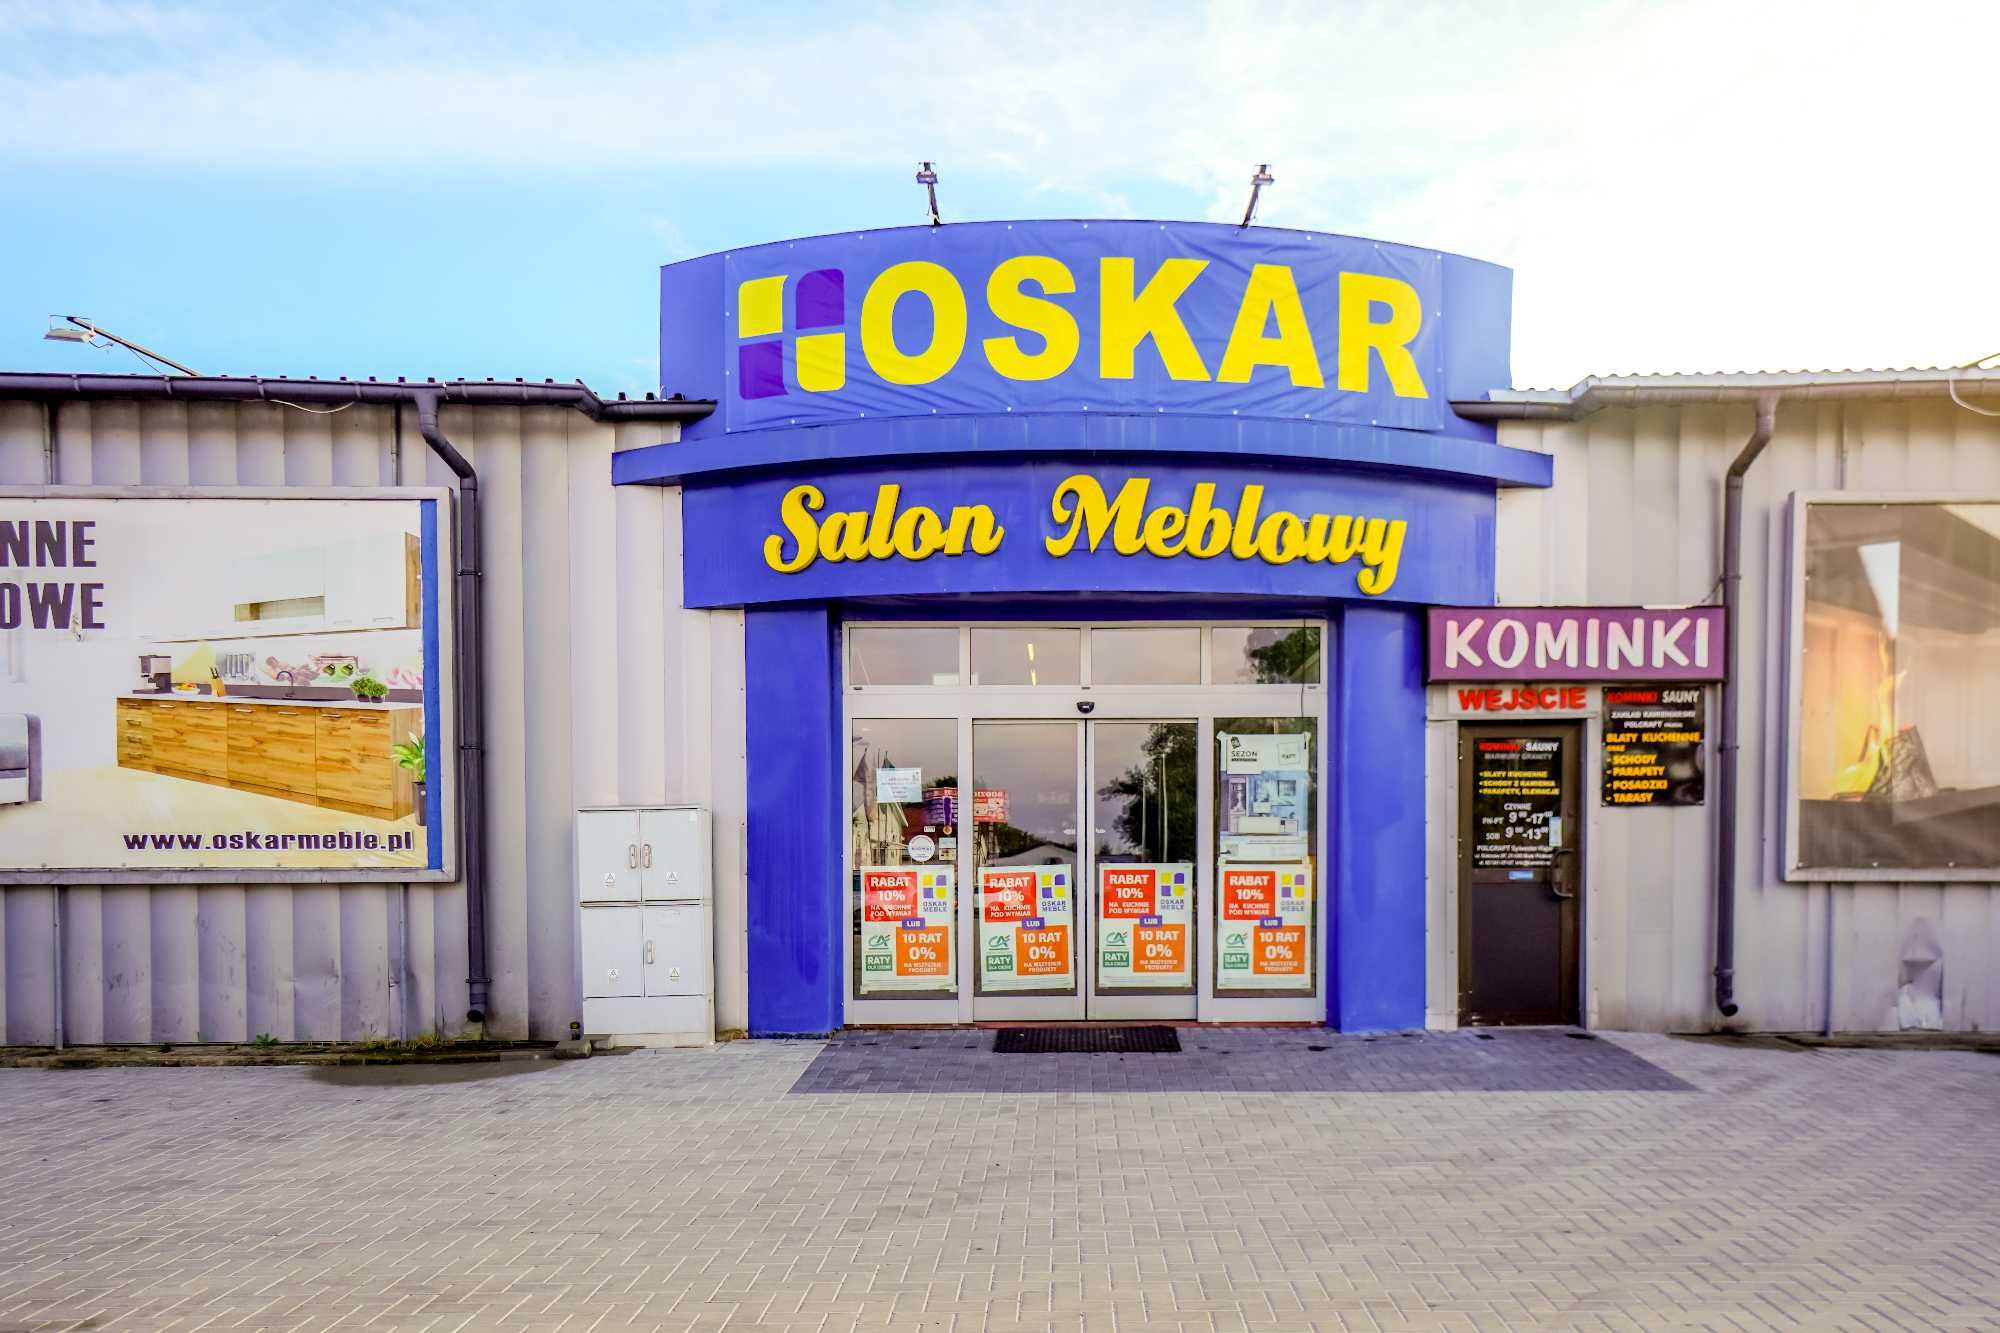 Lokal handlowo-magazynowo-usługowy w Białej Podlaskiej (CH.SAS)